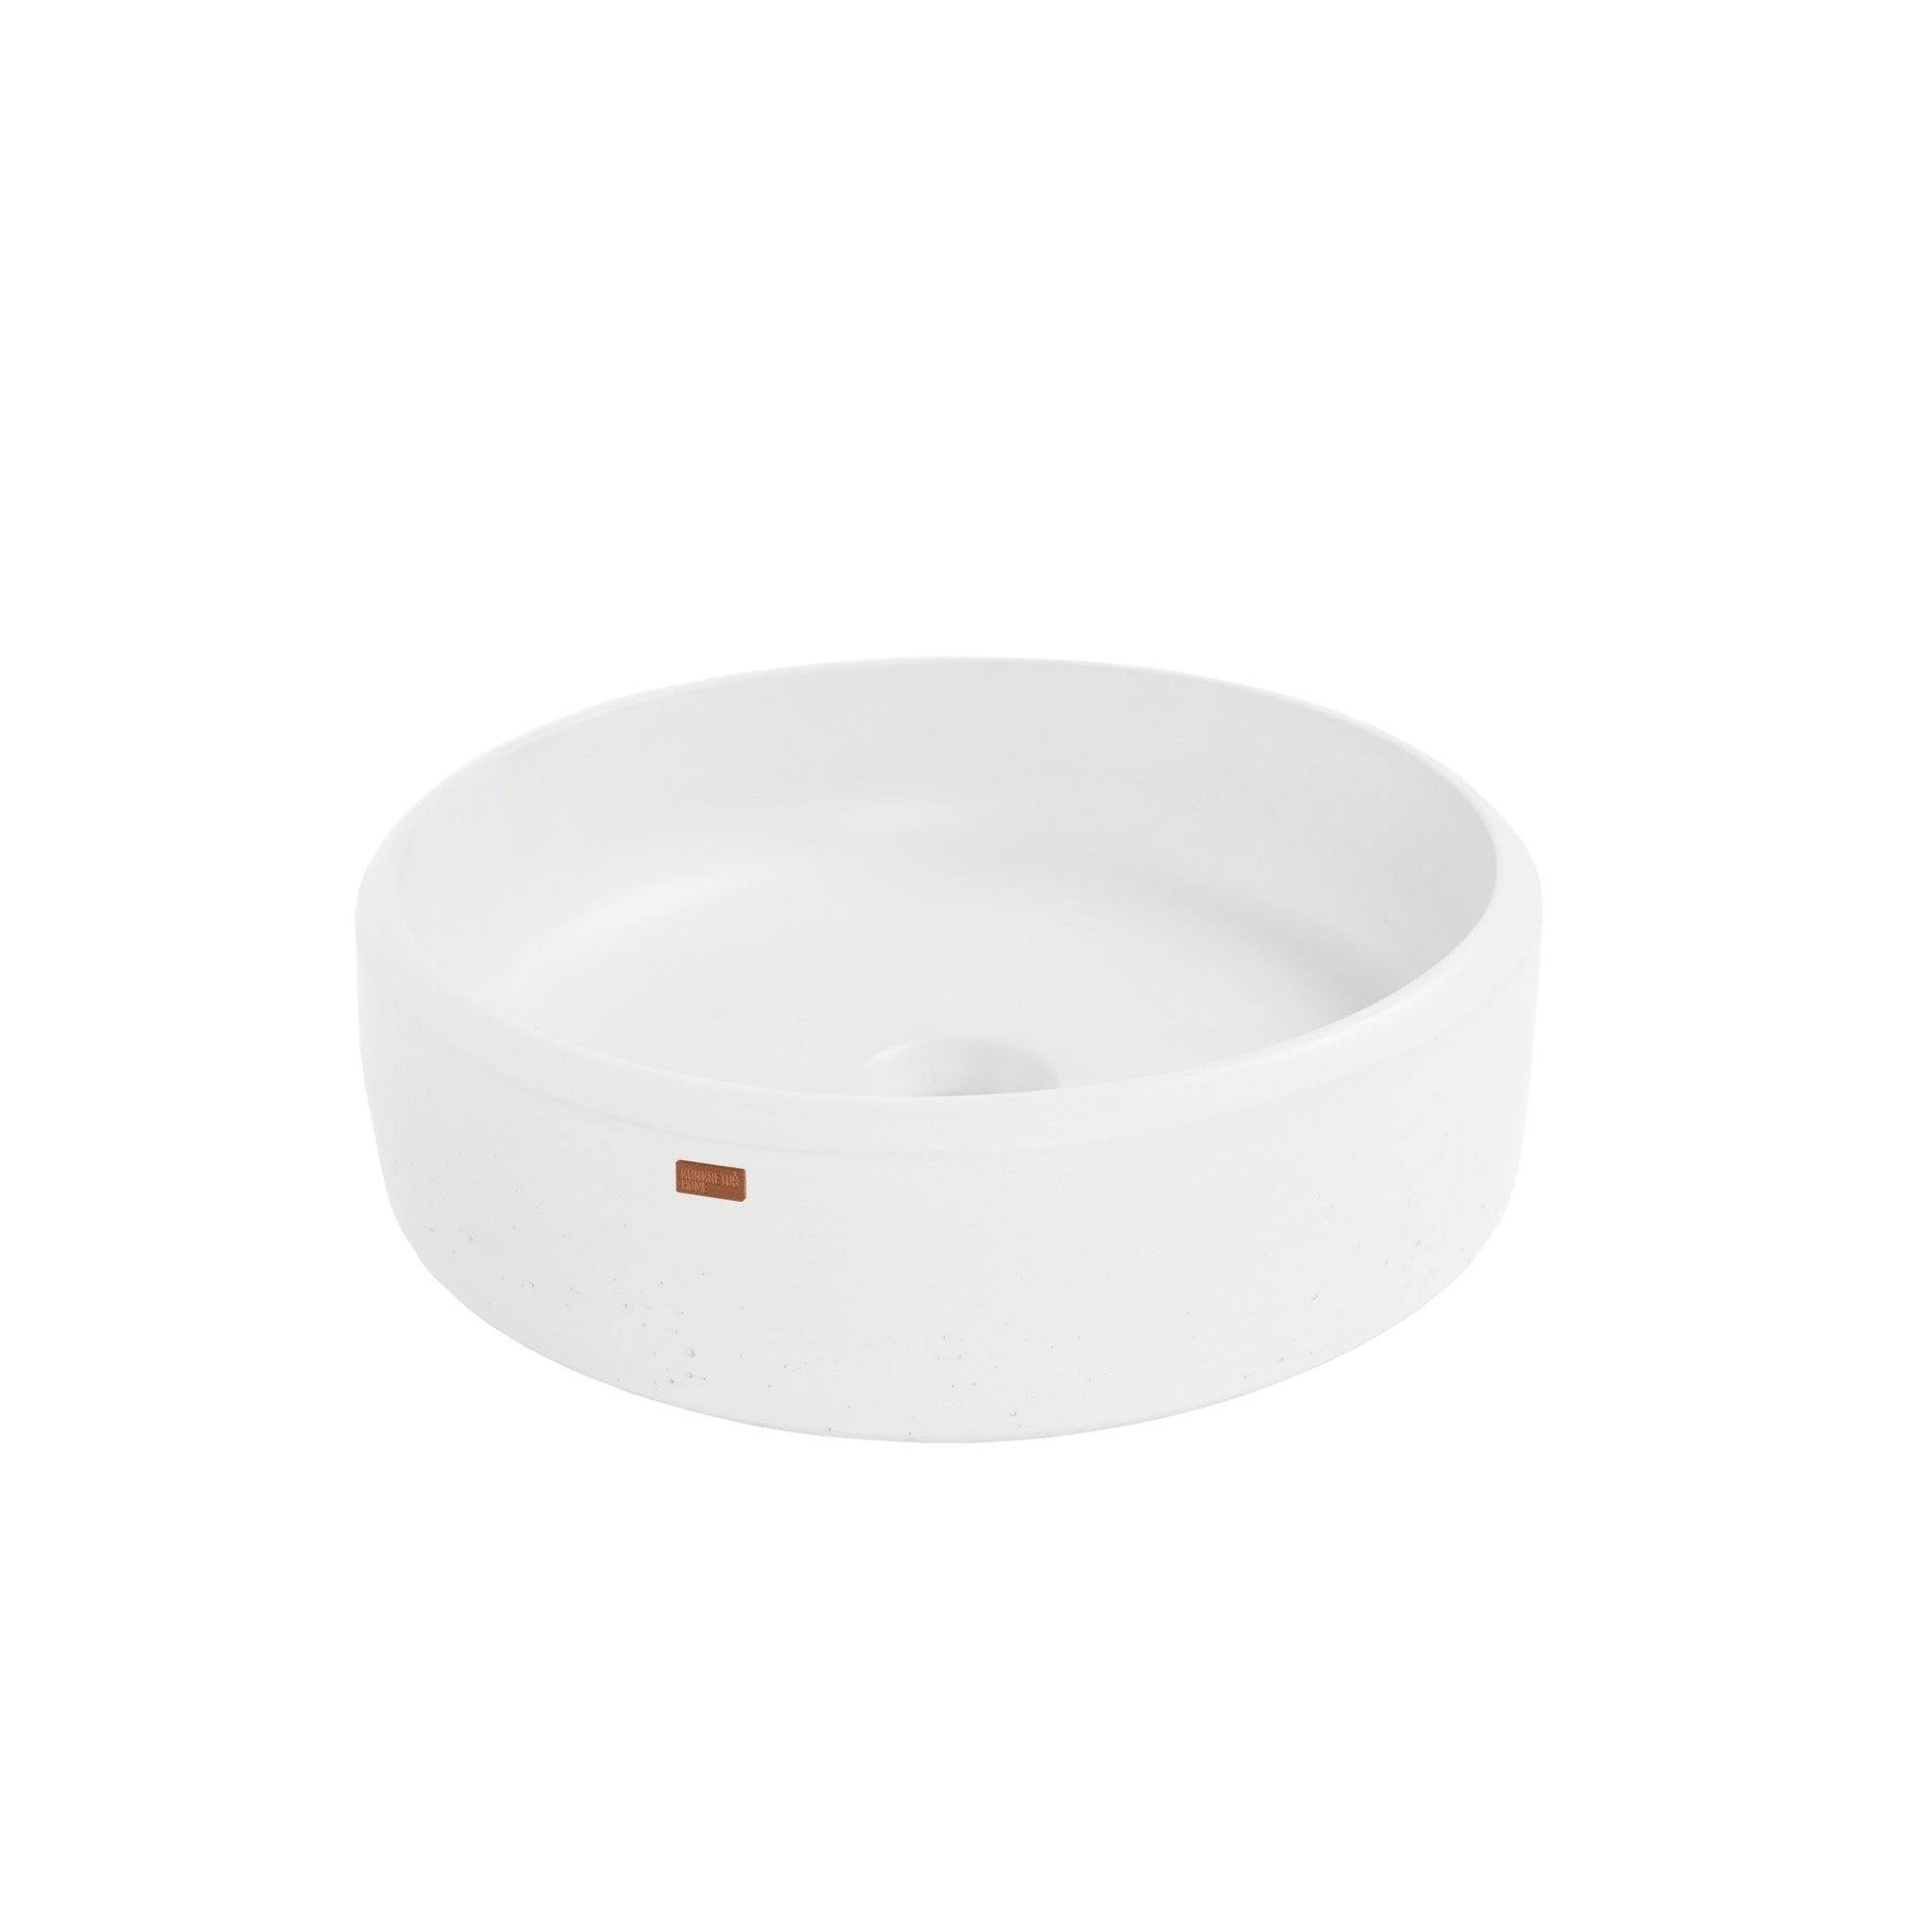 Konkretus, Konkretus Ubud01 15" Tulum White Top Mount Round Vessel Concrete Bathroom Sink